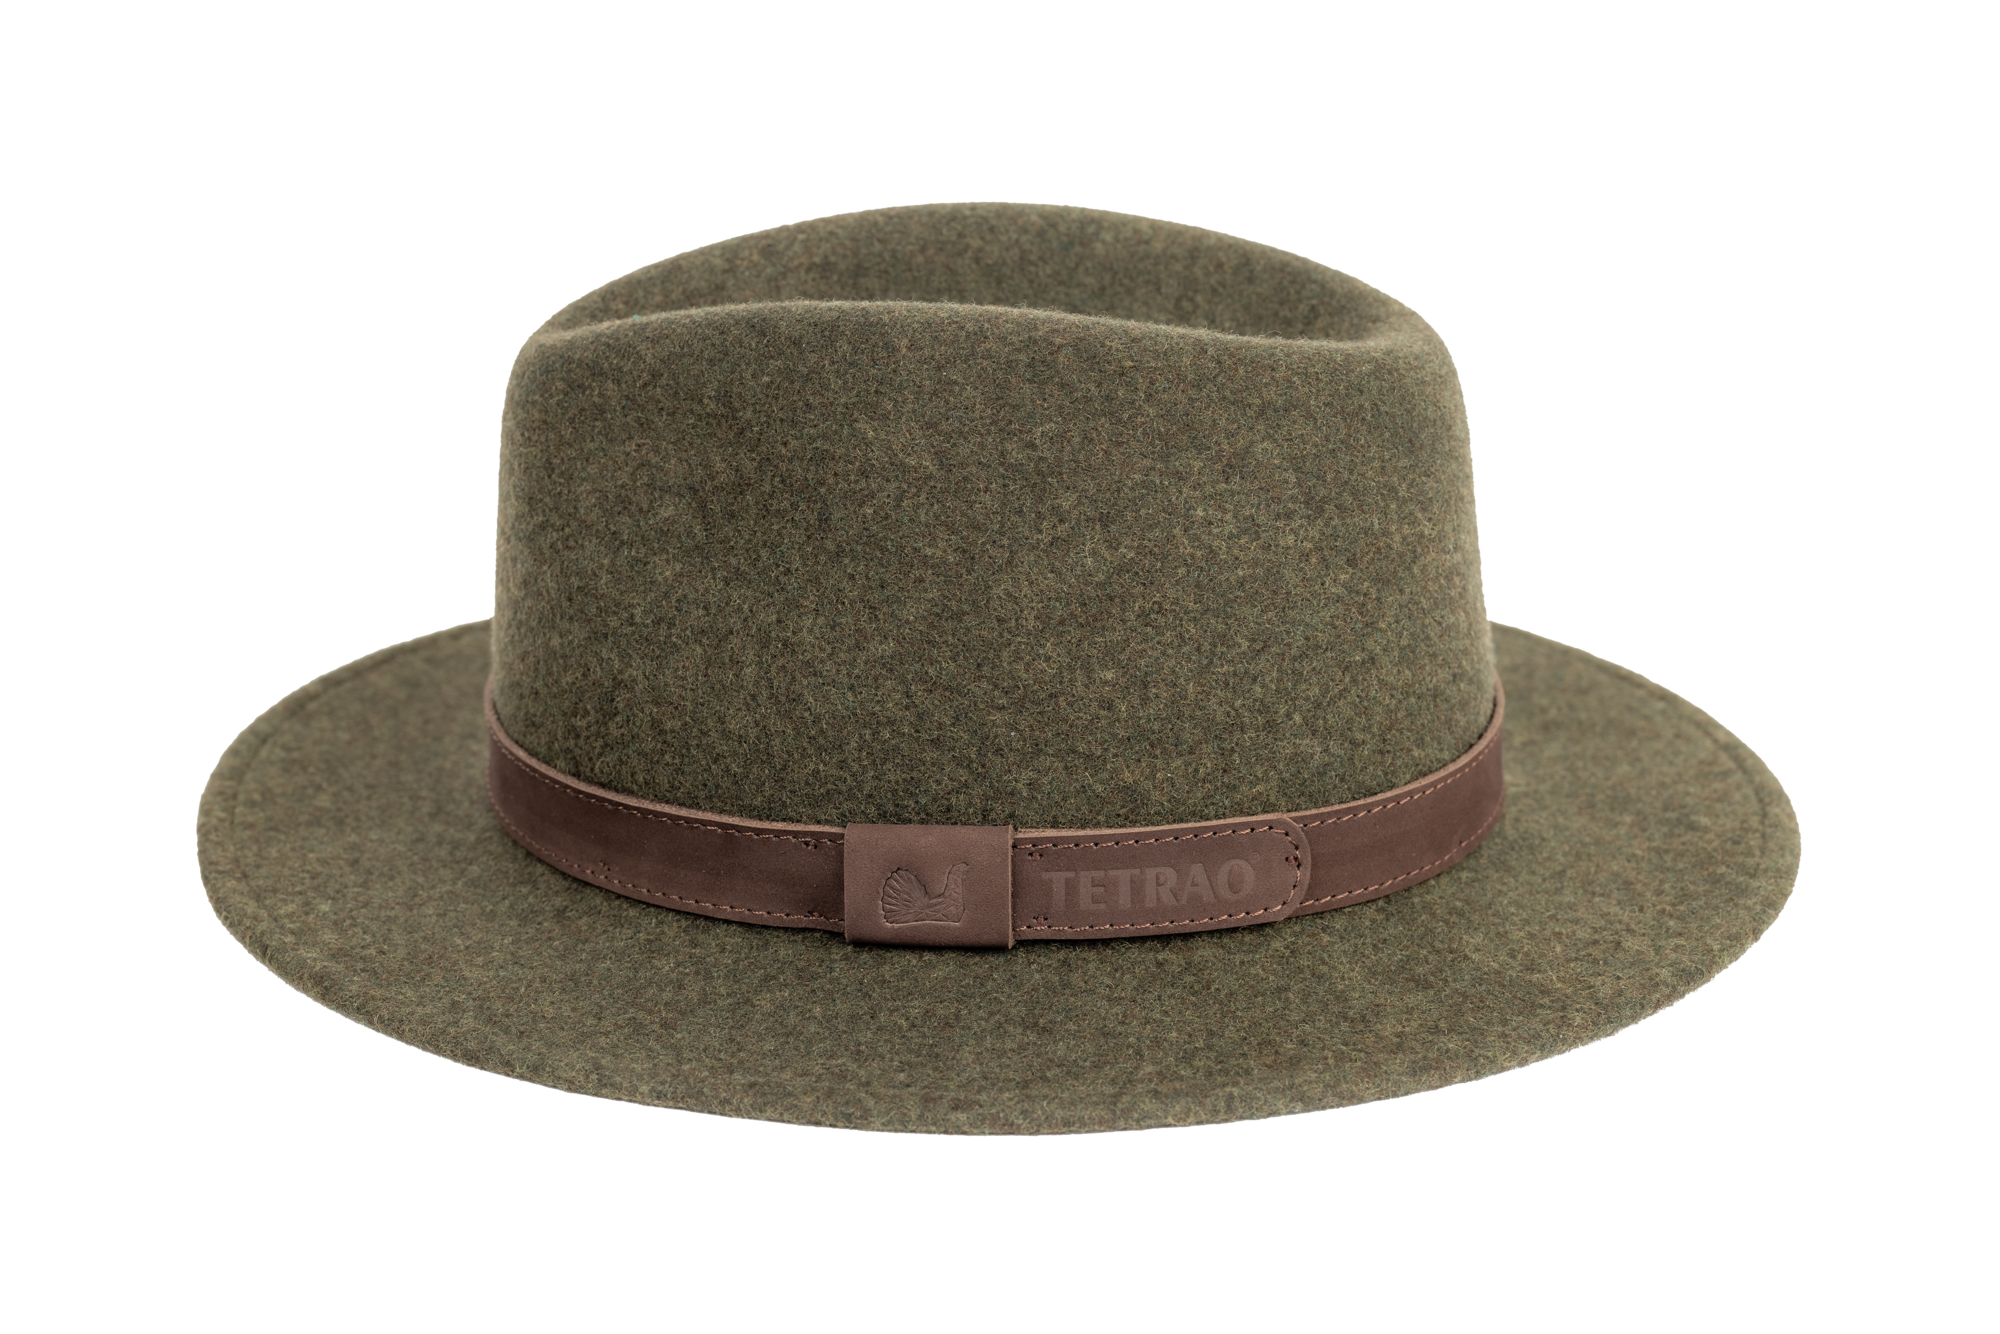 Poľovnícky klobúk TETRAO melanž UNI - zelený  57